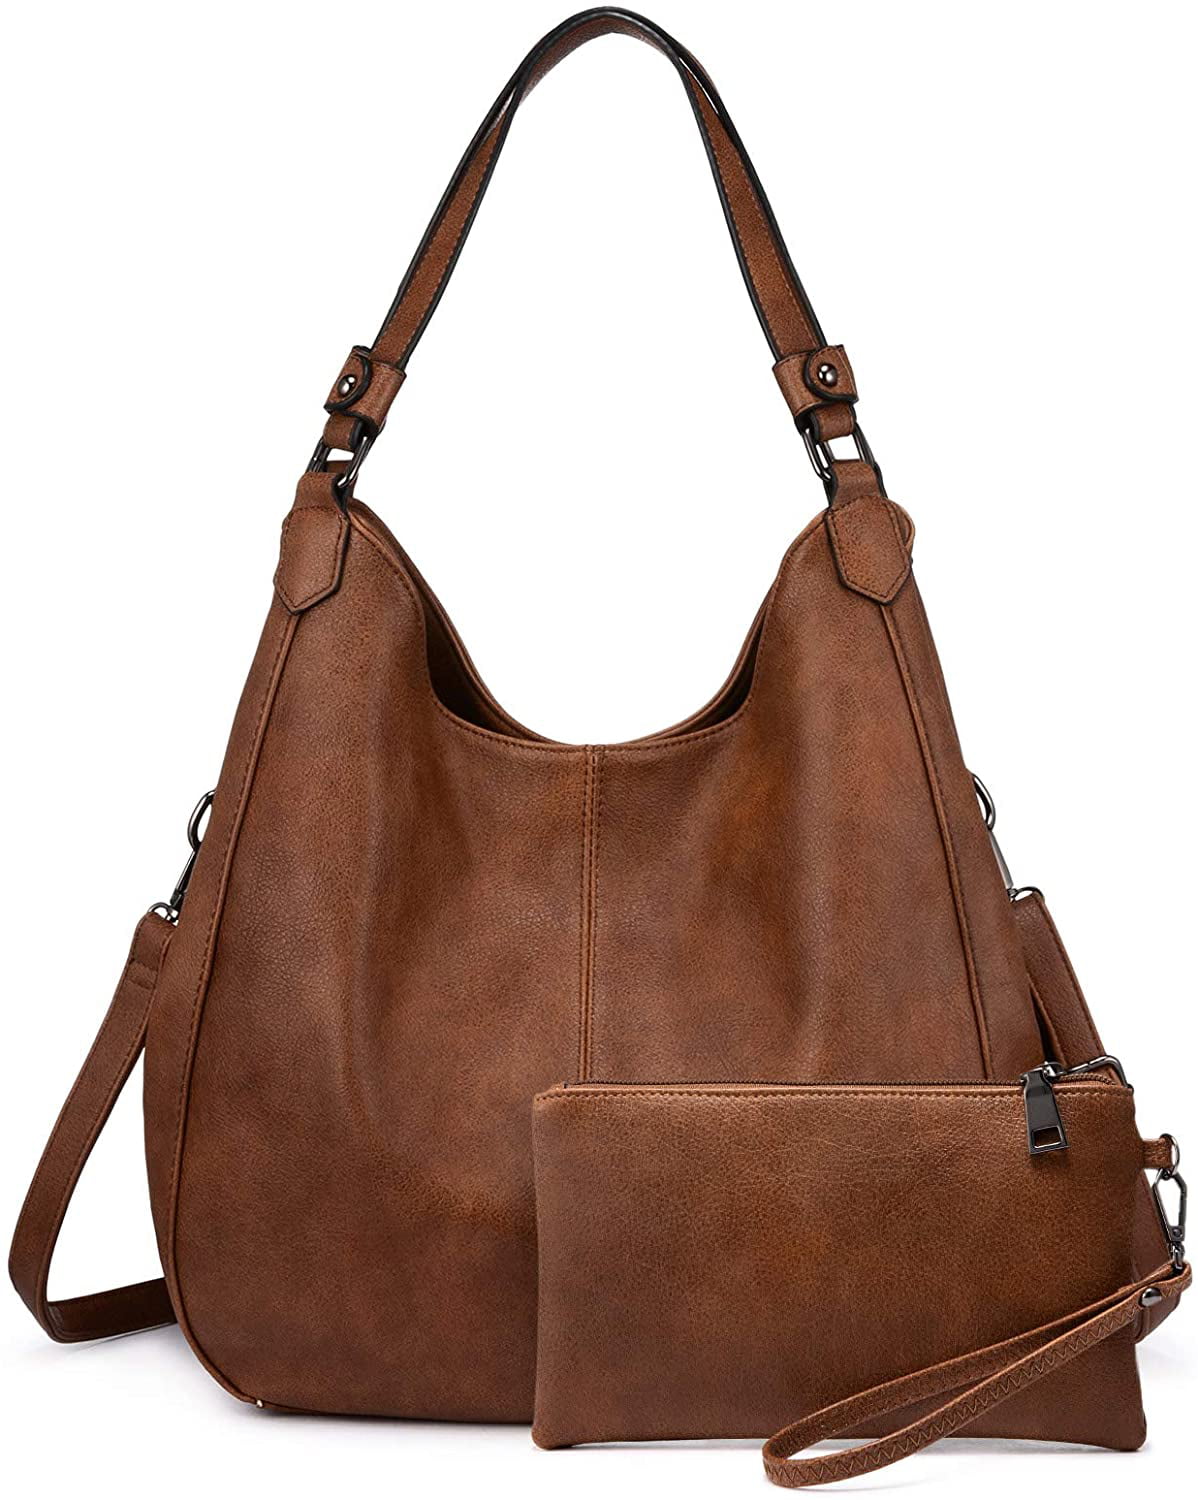 Large Leather Hobo Handbags Purse Shoulder Strap Vintage Bucket Bag Brown  Women | eBay